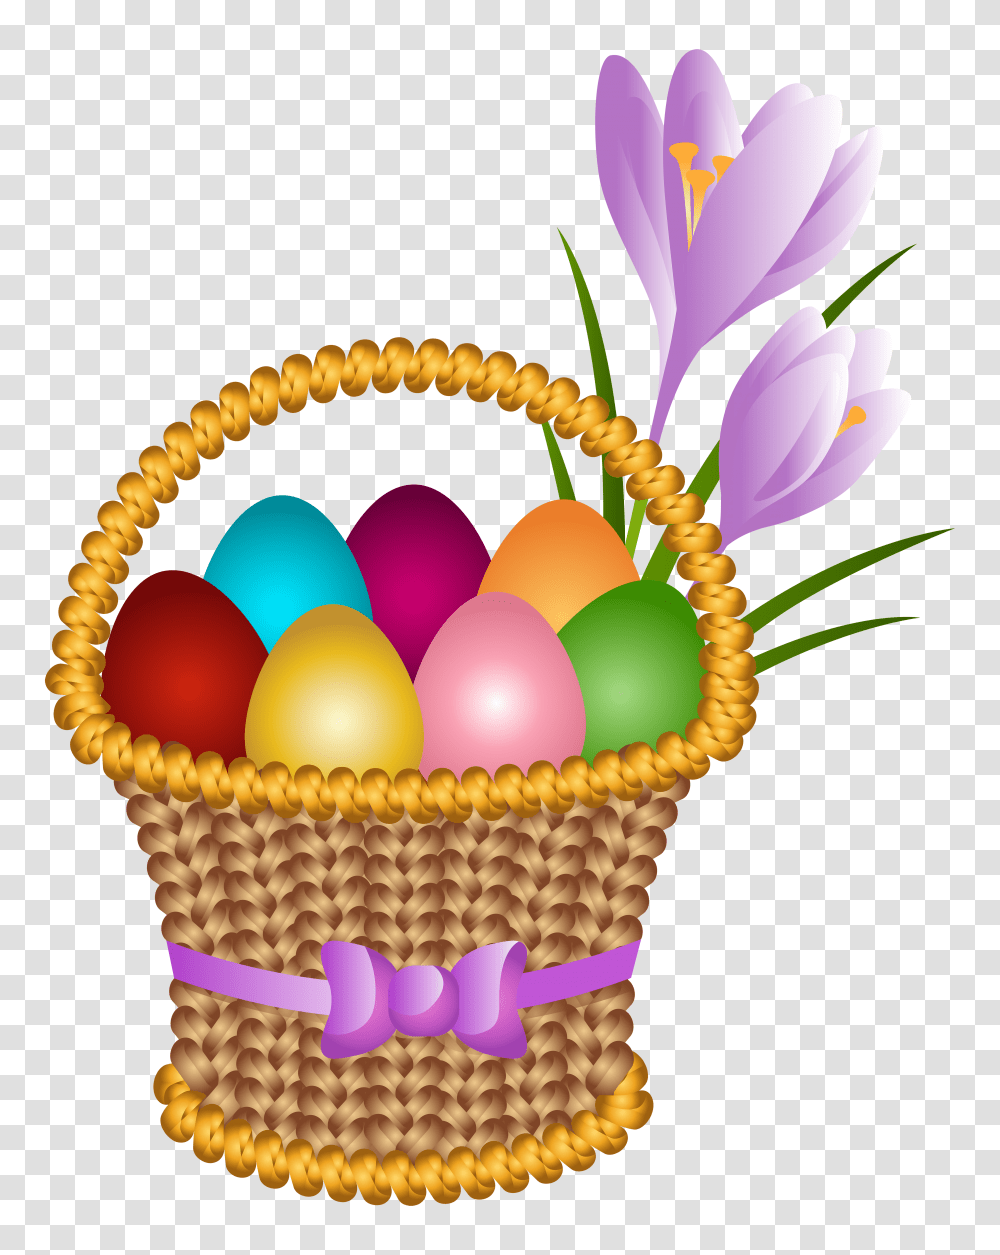 Easter Egg Basket Clip Art Gallery Transparent Png